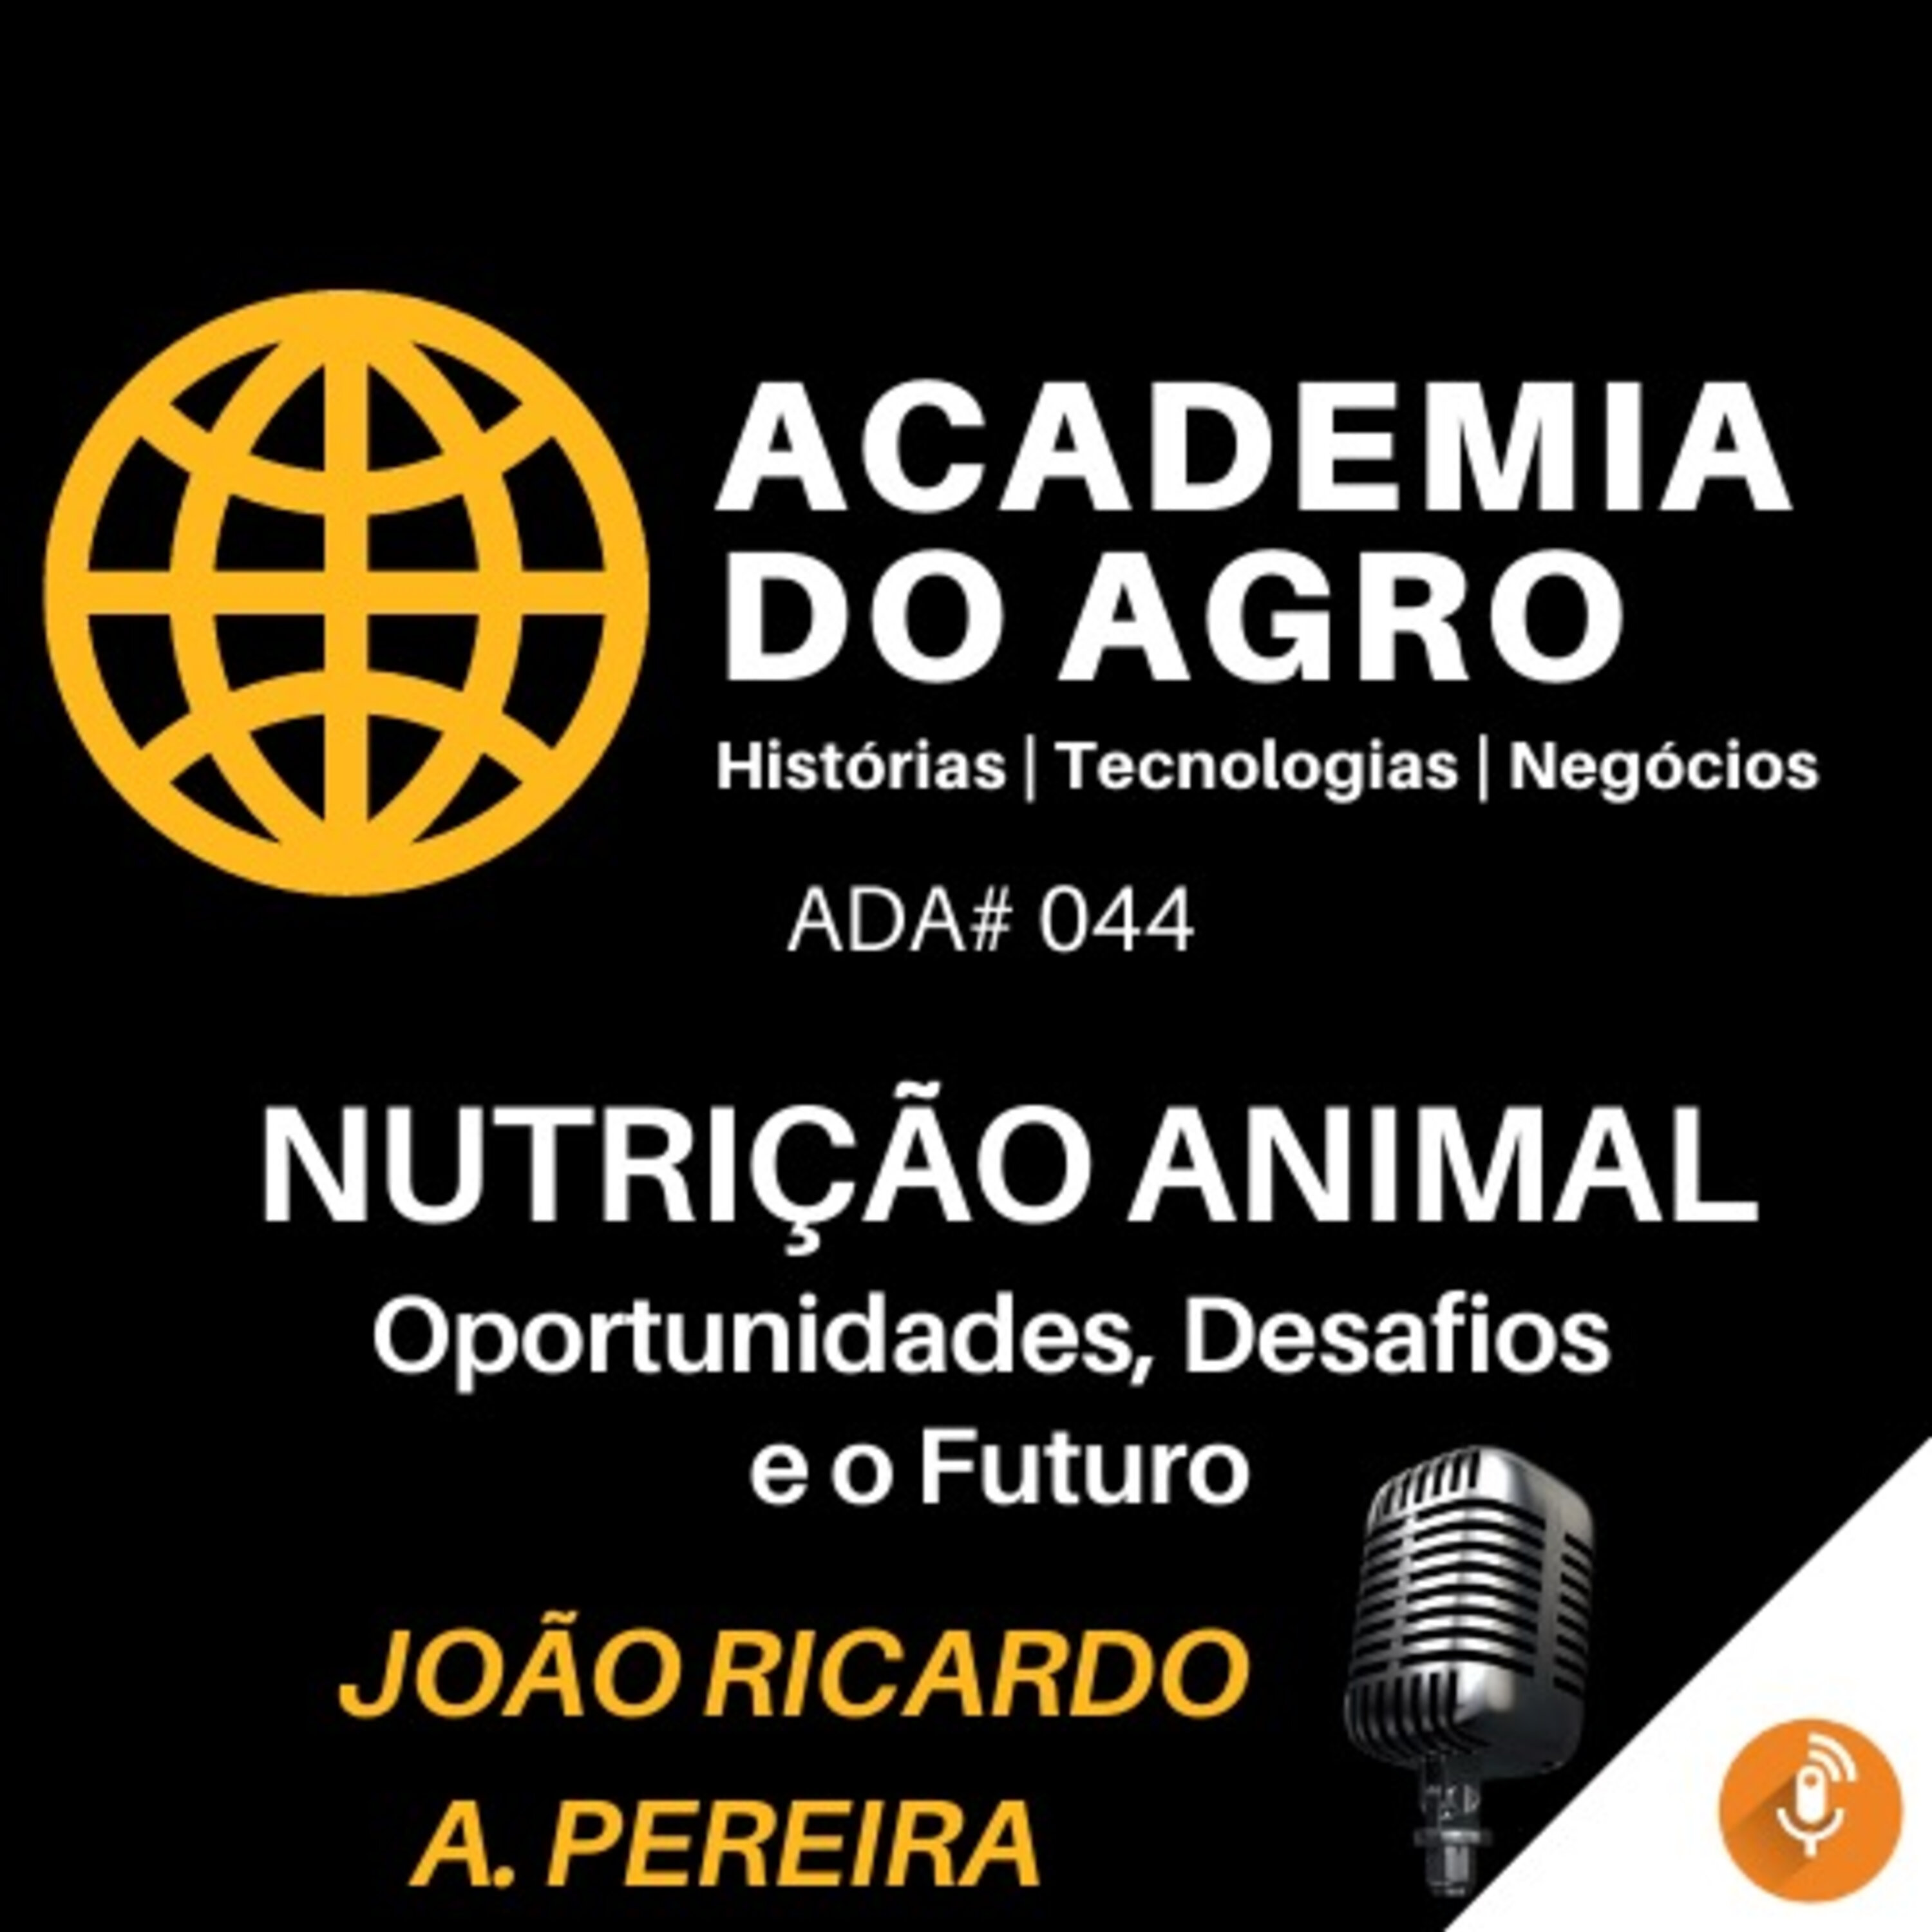 Nutrição Animal: Oportunidades, Desafios e o Futuro